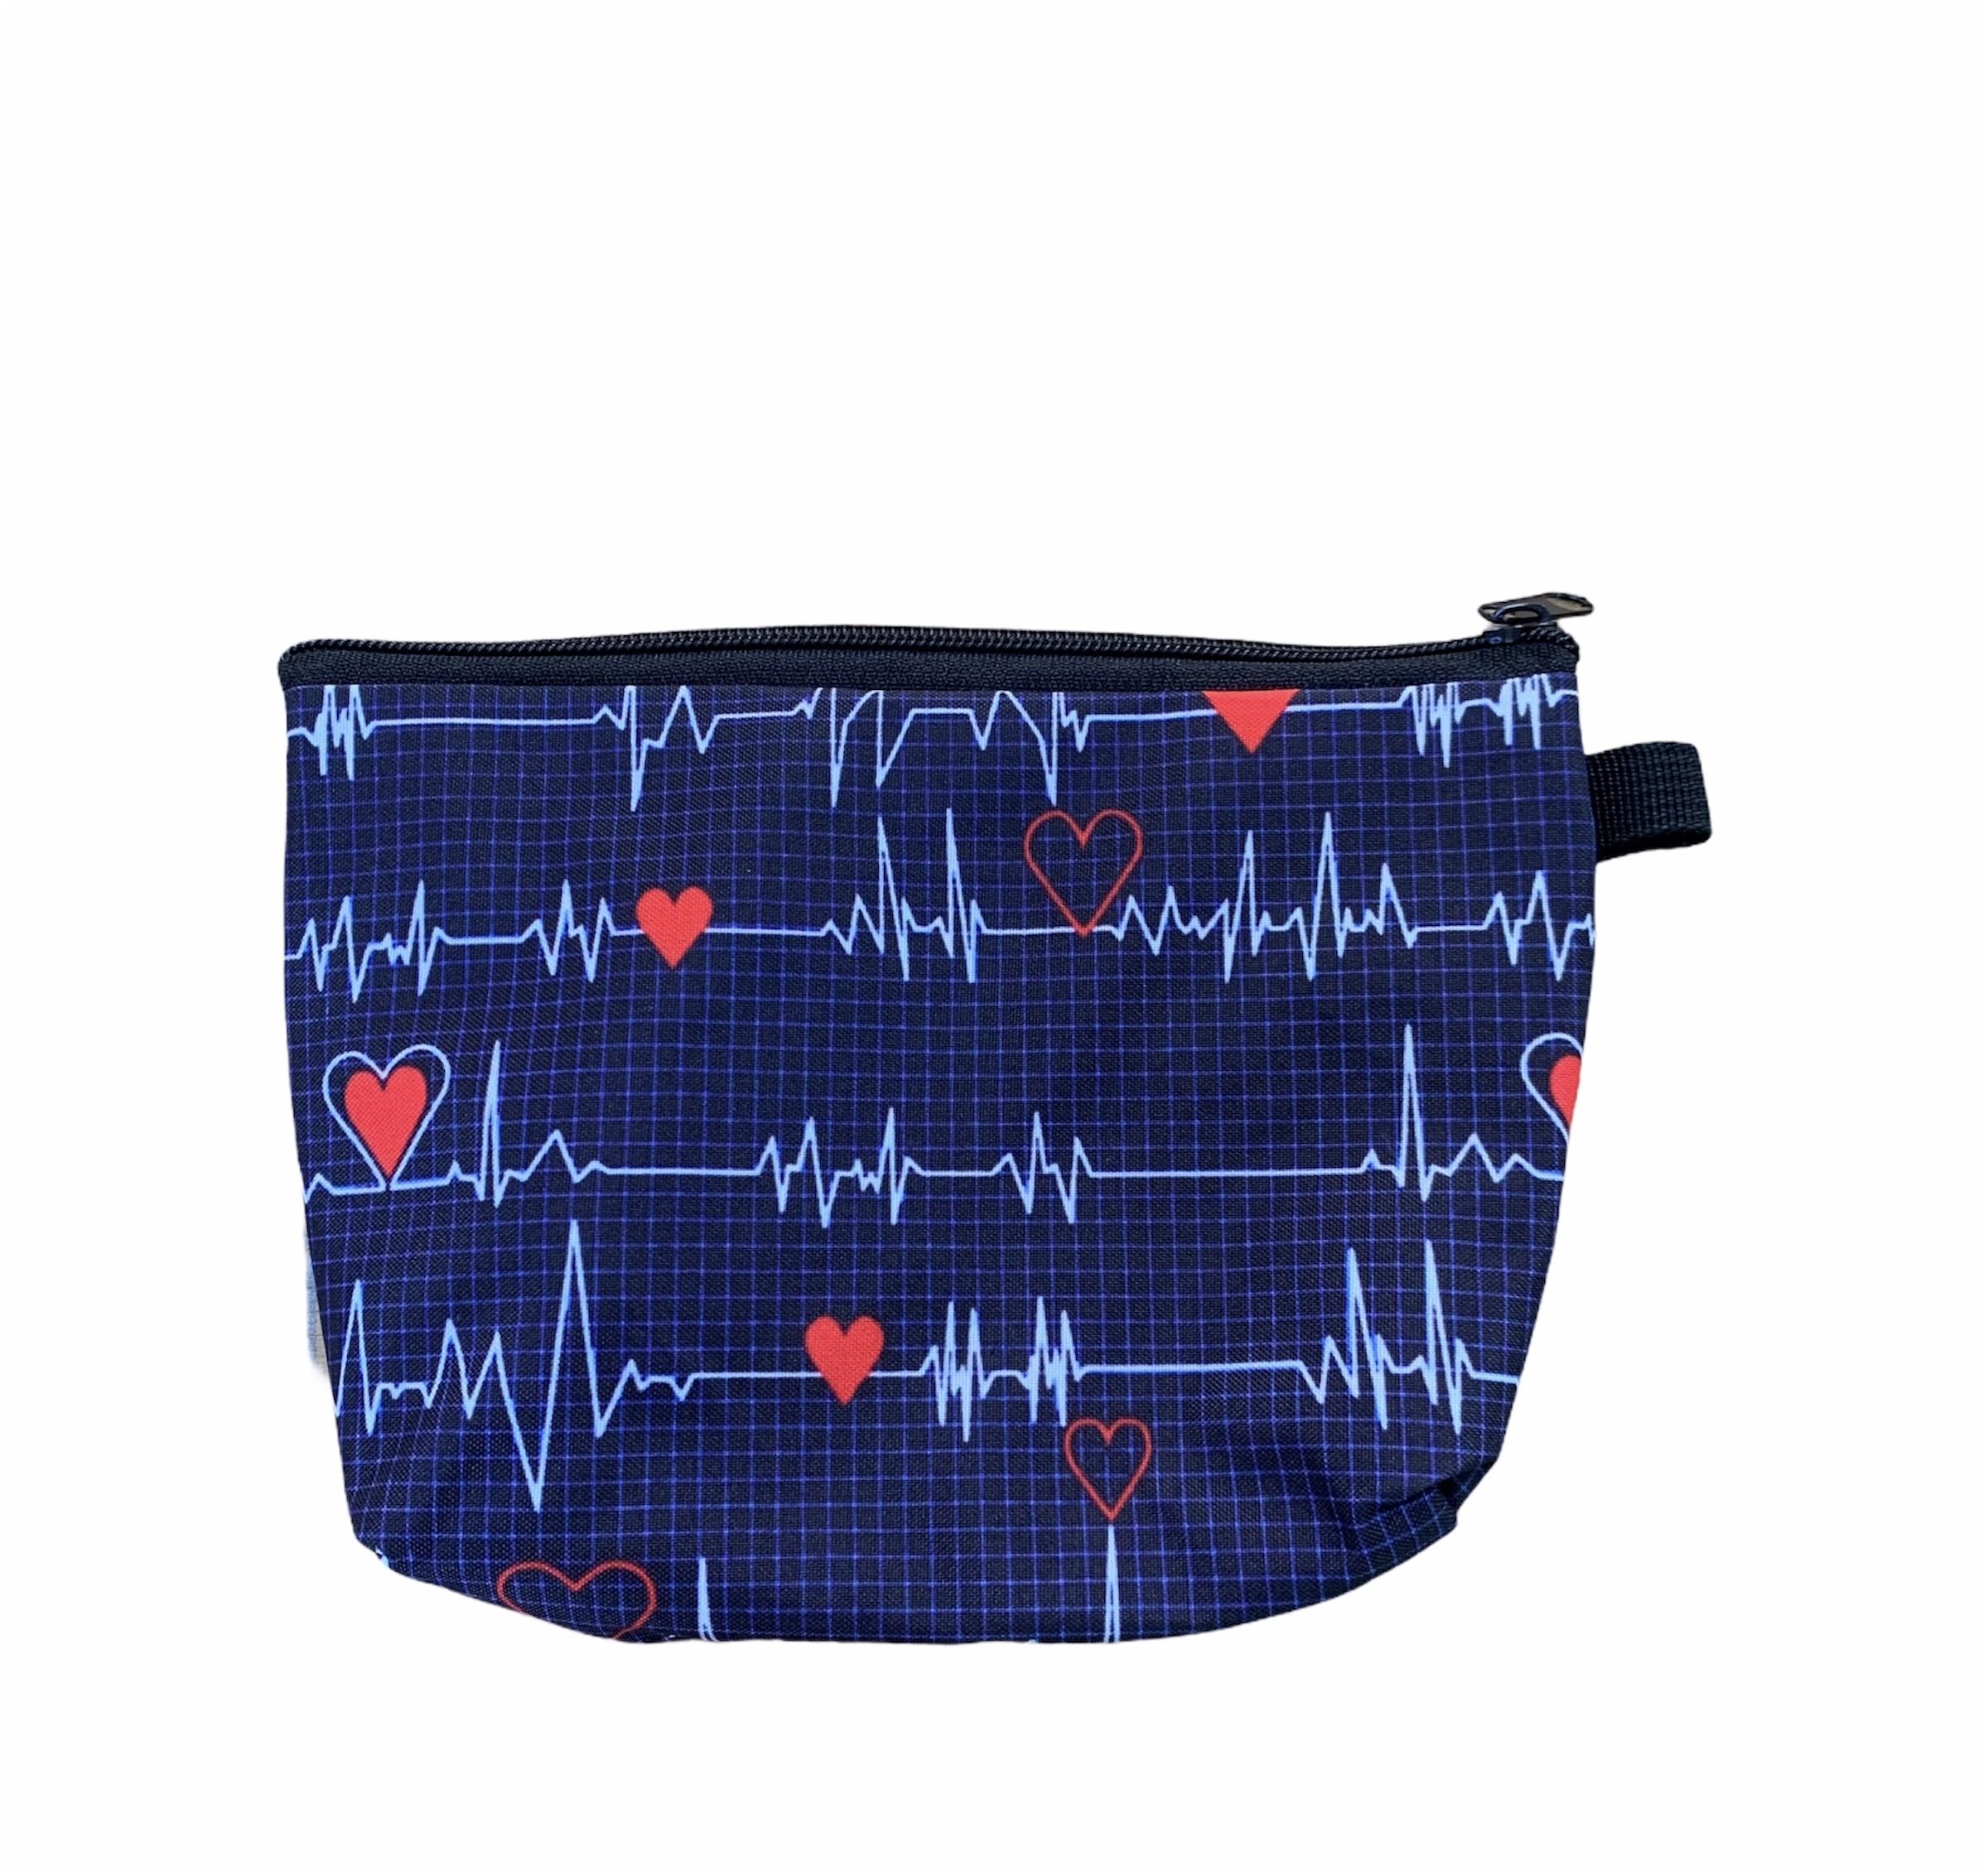 Lille taske med print af EKG